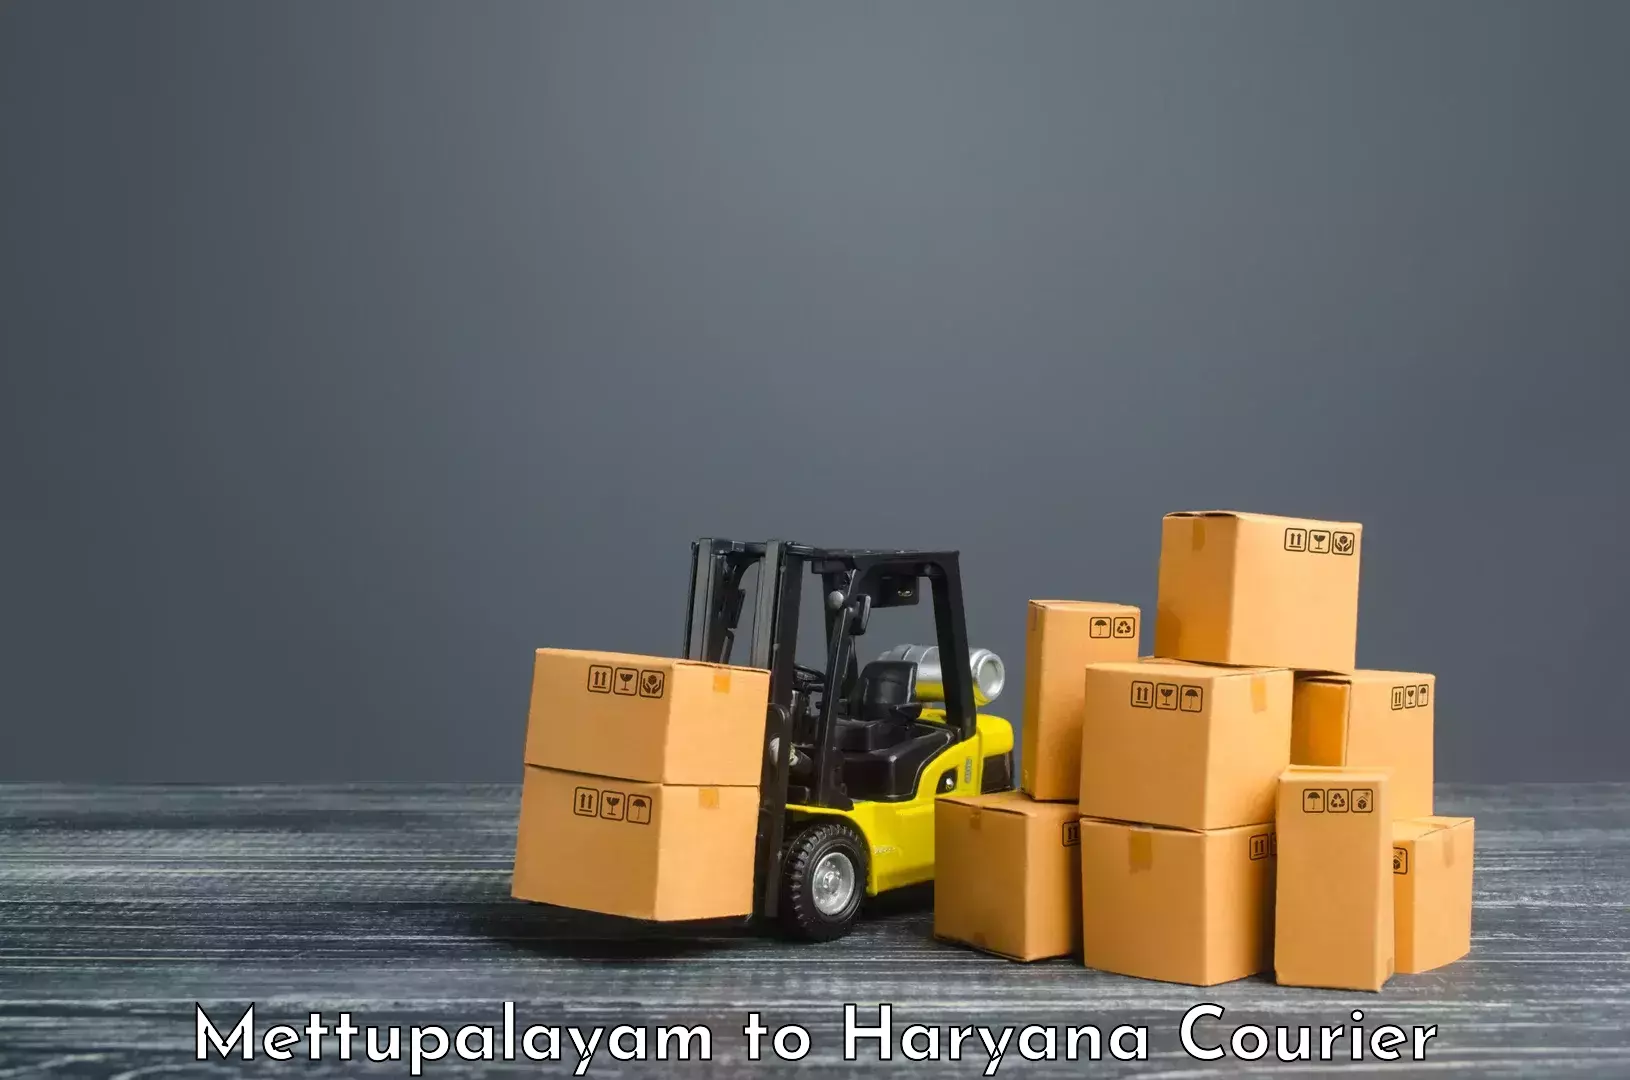 Advanced shipping technology Mettupalayam to Gurgaon